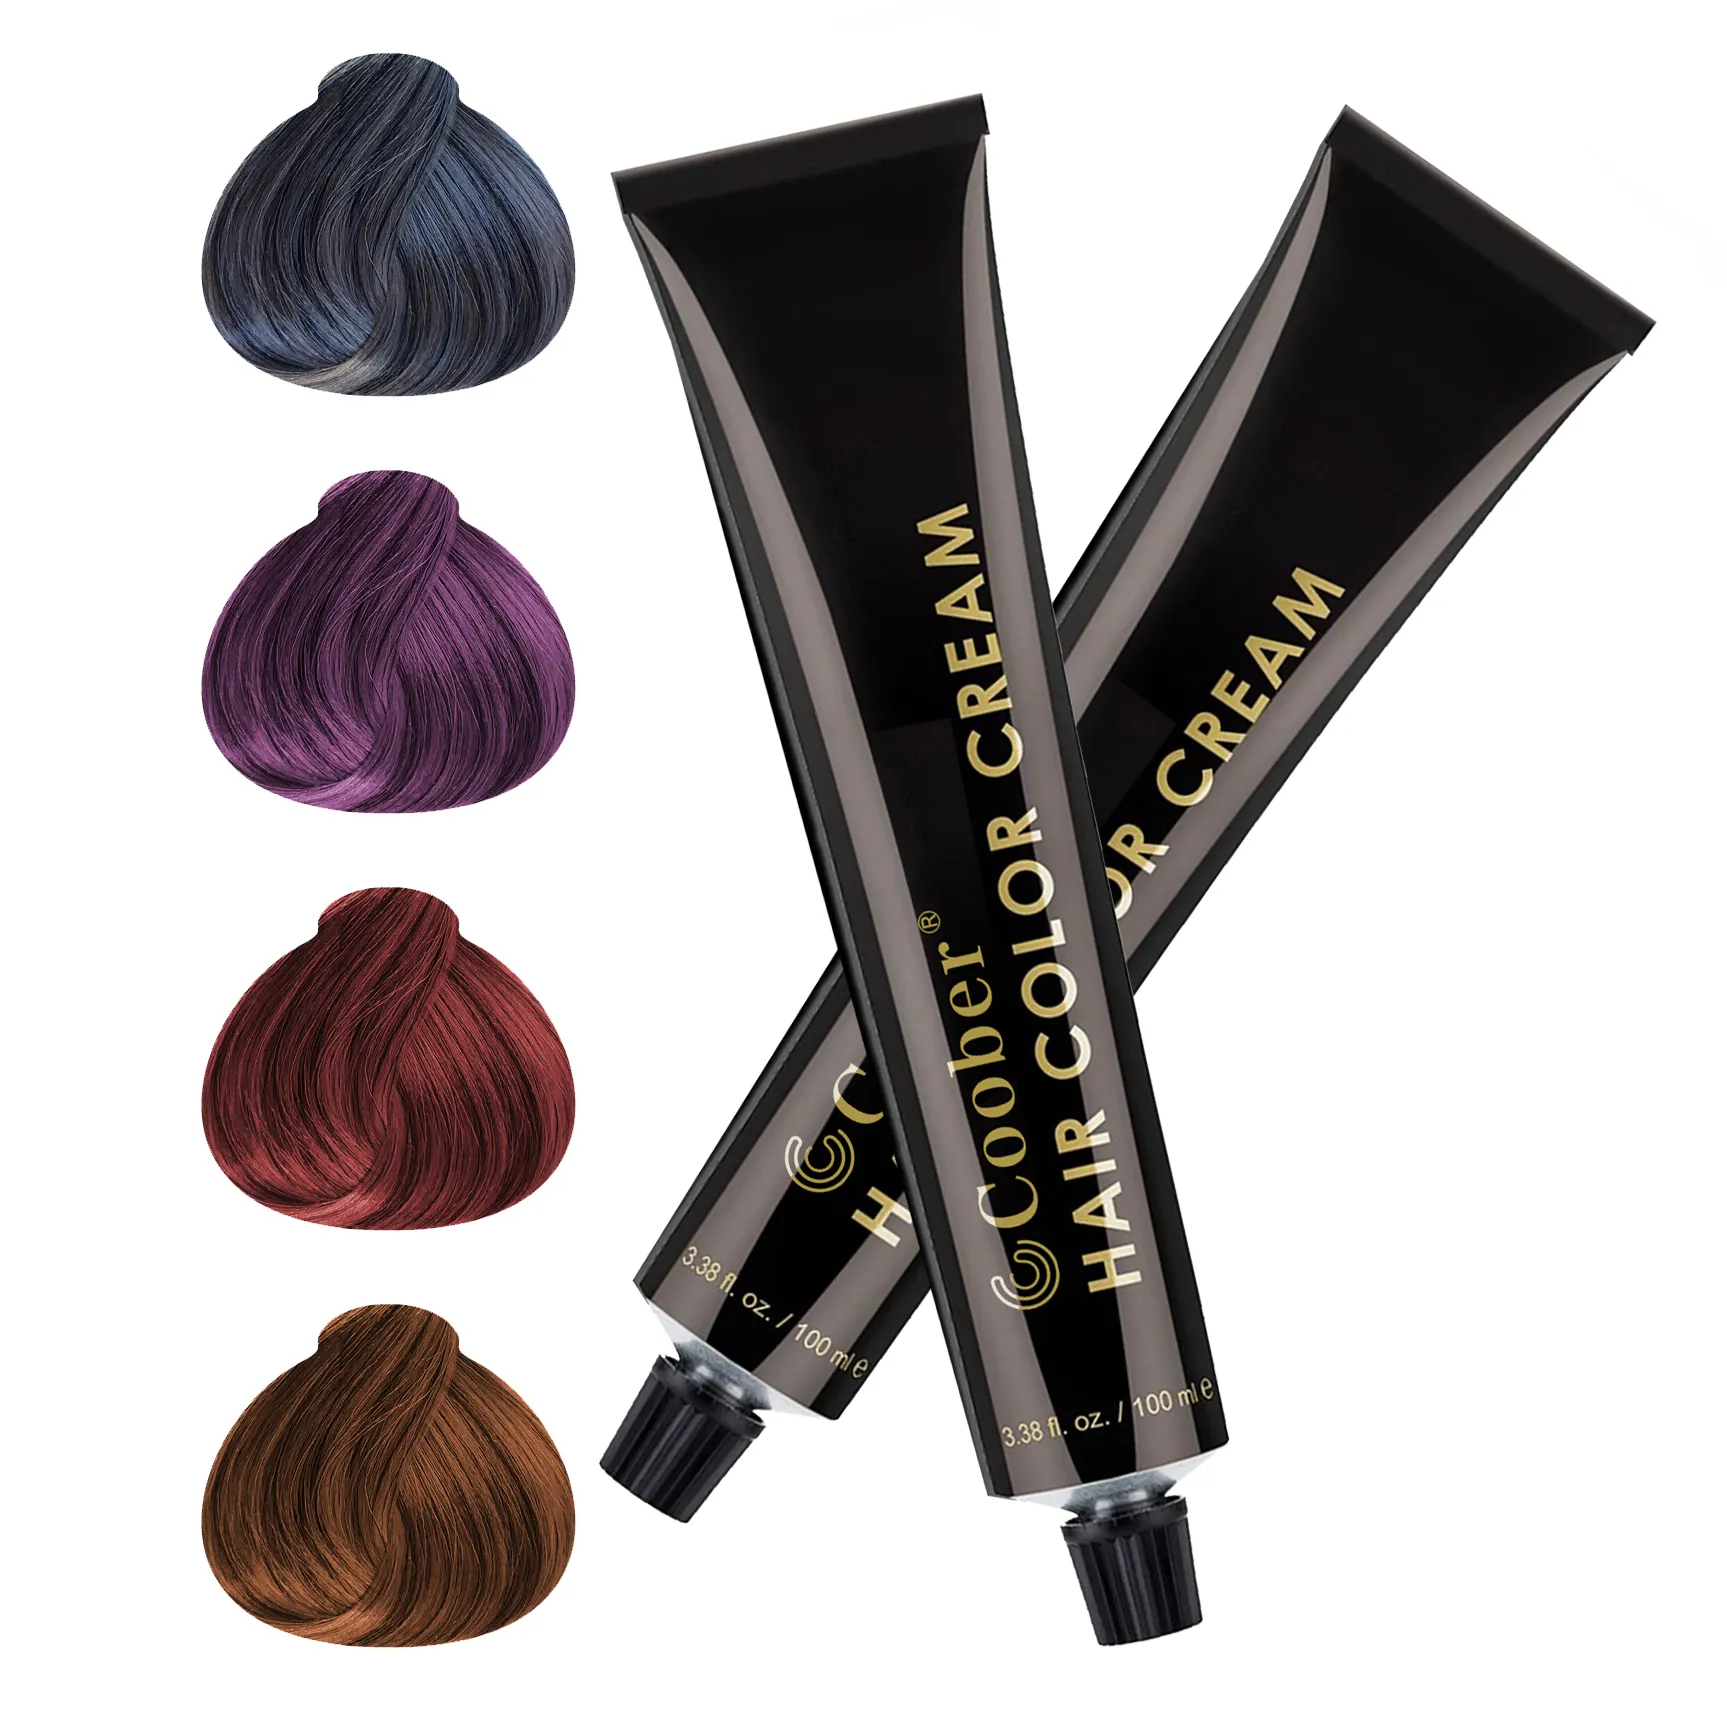 OEM Krim Warna Rambut Grosir untuk Salon & Penggunaan Pribadi Produk Semipermanen Pewarna Rambut